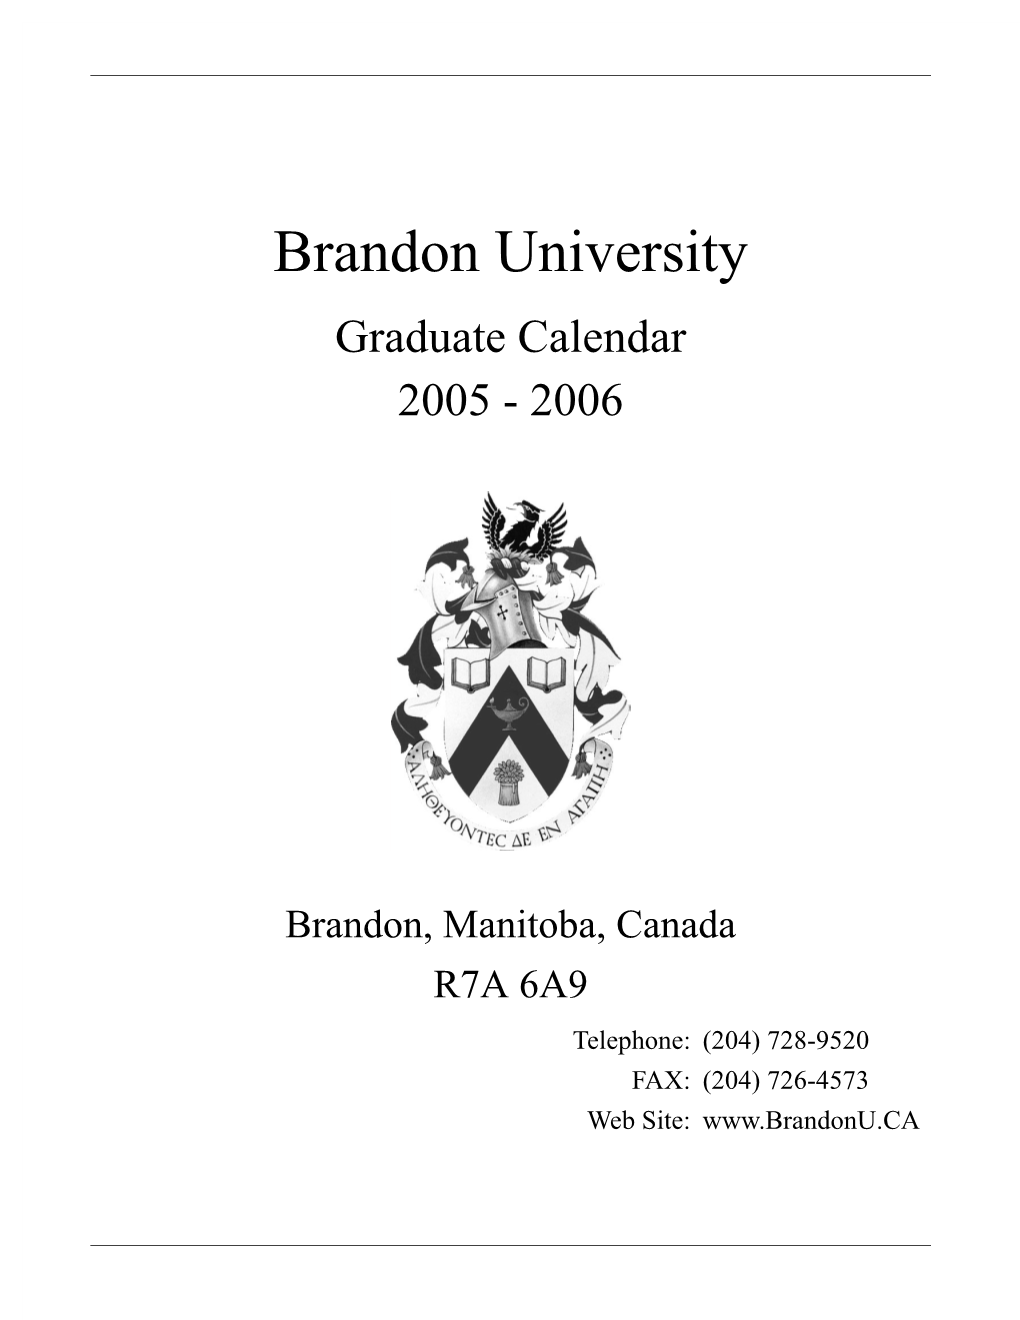 Graduate Calendar 2004-2005